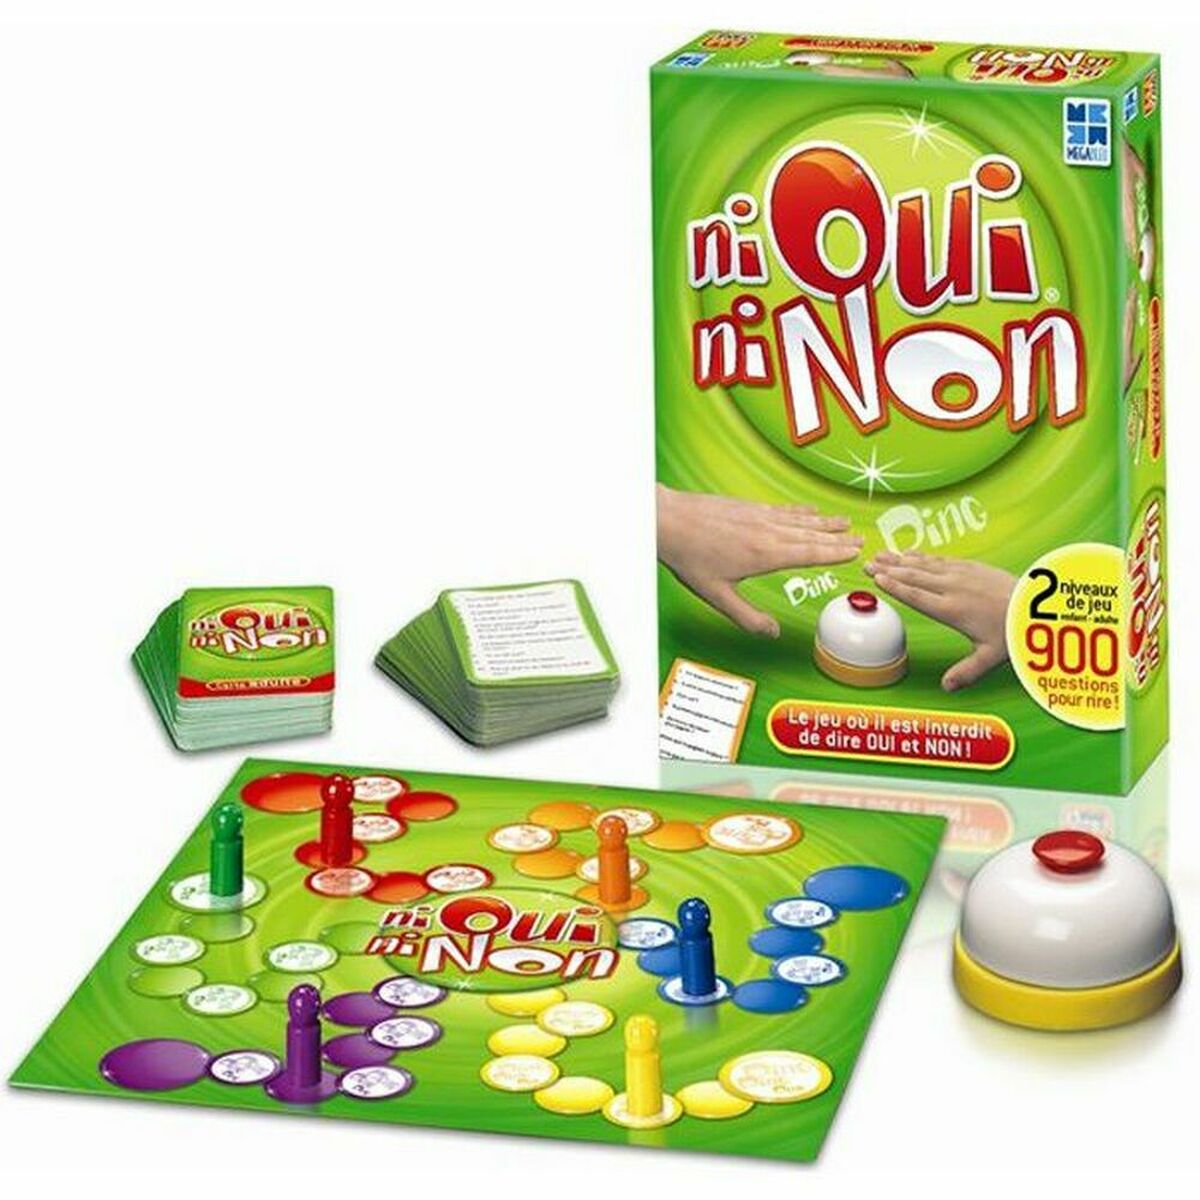 Tischspiel Megableu Ni Oui Ni Non (FR)